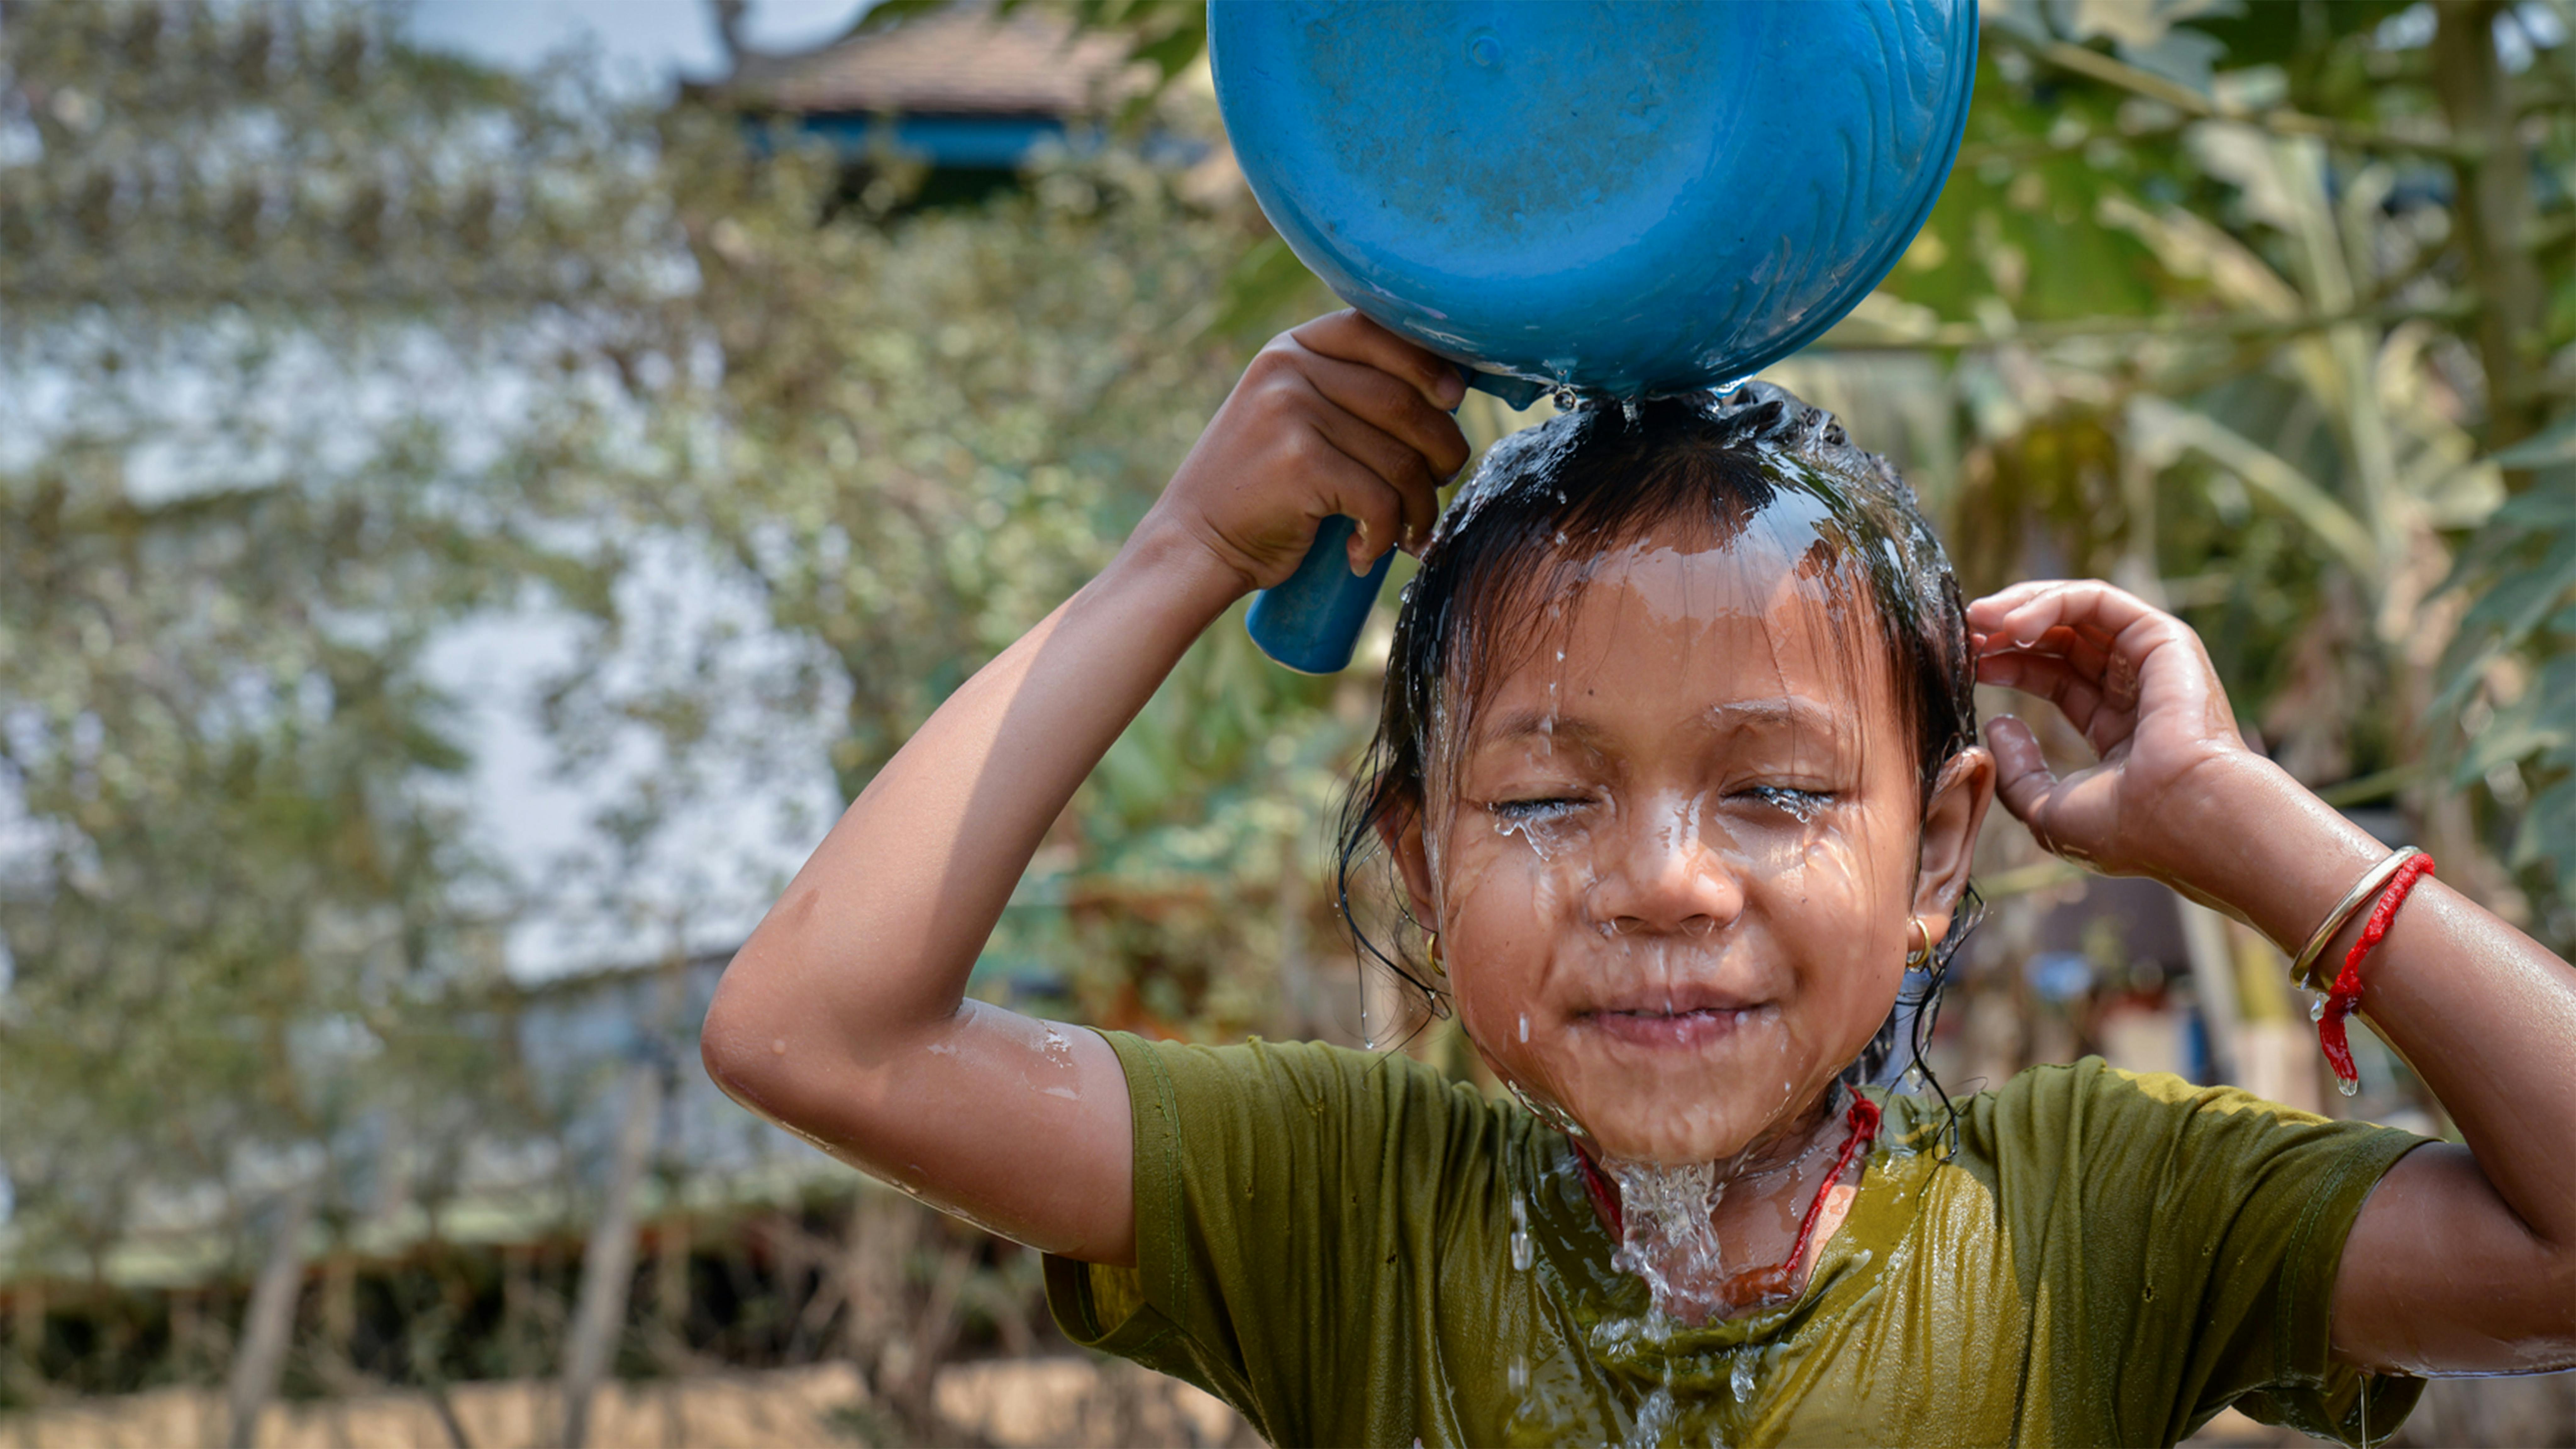 Cambogia - Mara, 5 anni, si fa la doccia quotidiana dopo la scuola.